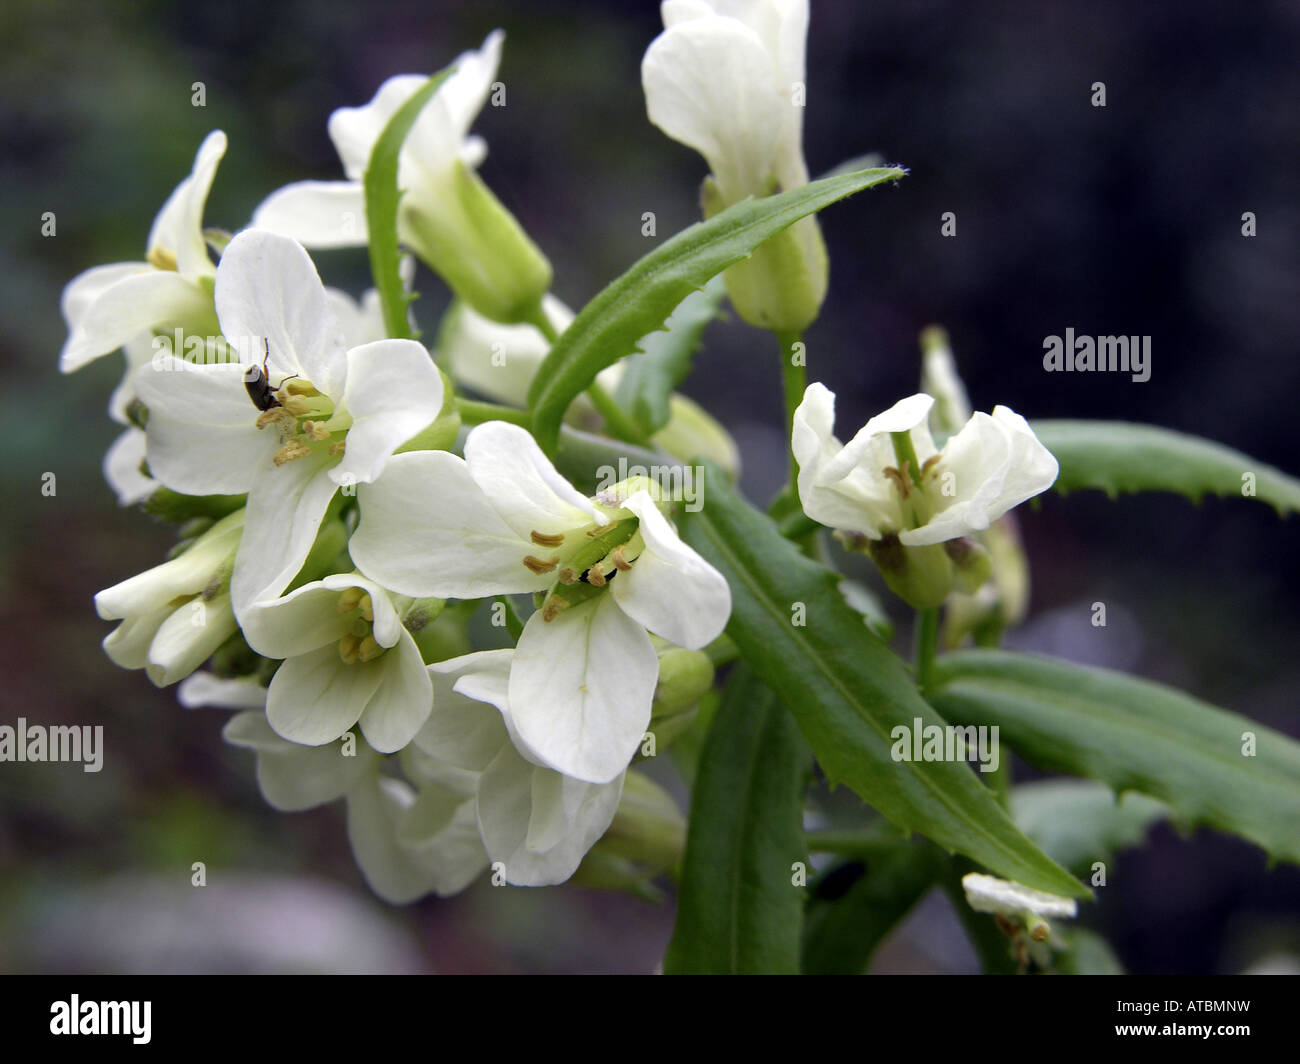 tower cress (Arabis turrita), flowers Stock Photo